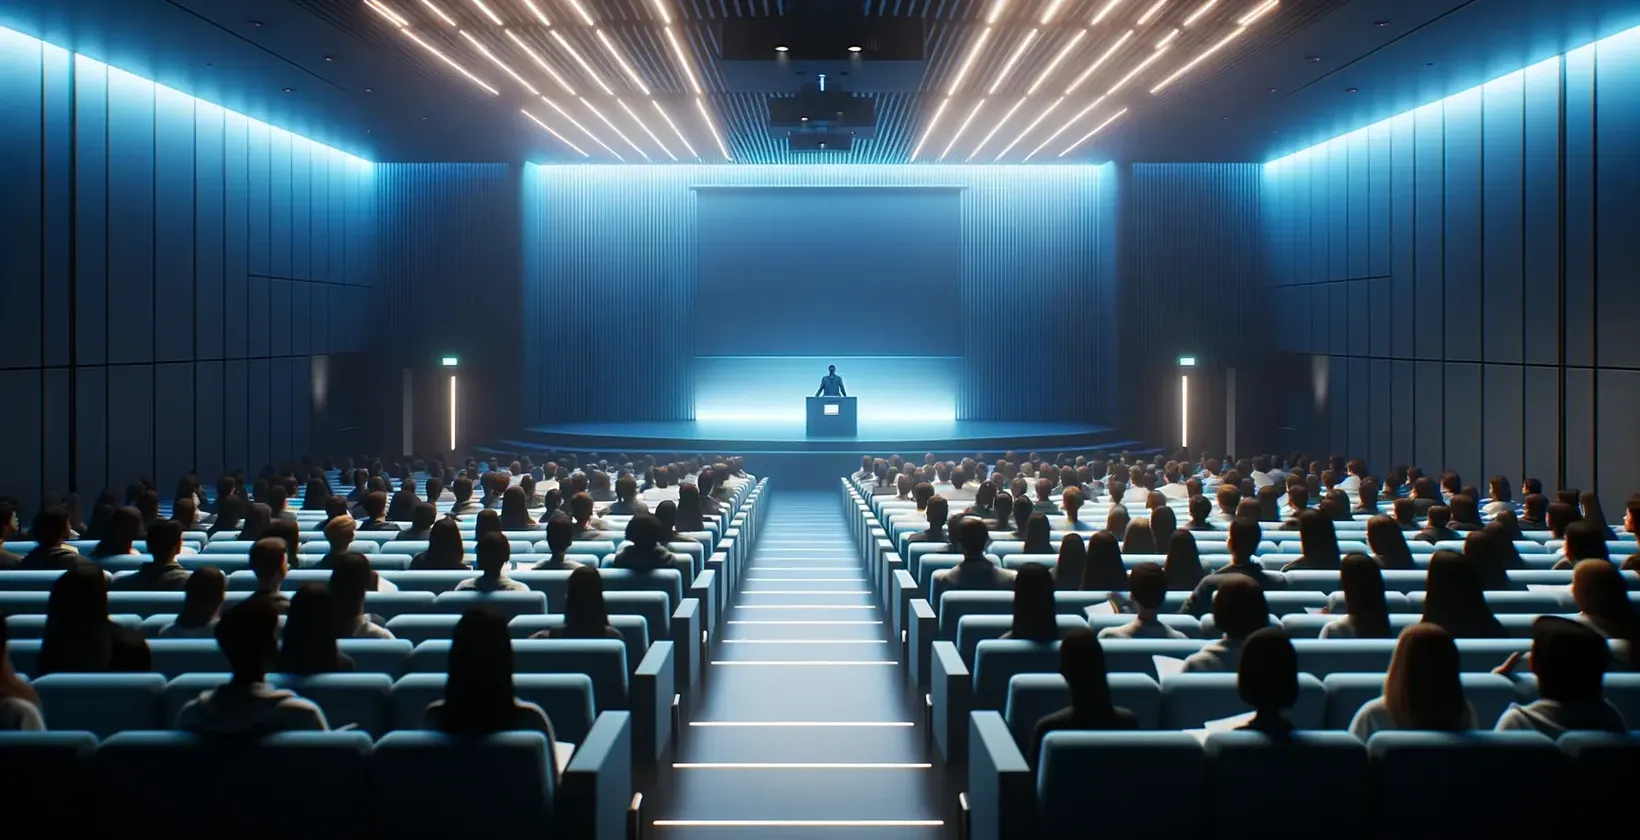 व्याख्यान कक्ष का वातावरण मंद रोशनी से जगमगा रहा है जिसमें उपस्थित लोग मंच पर एक मंच और एक वक्ता का सामना कर रहे हैं।